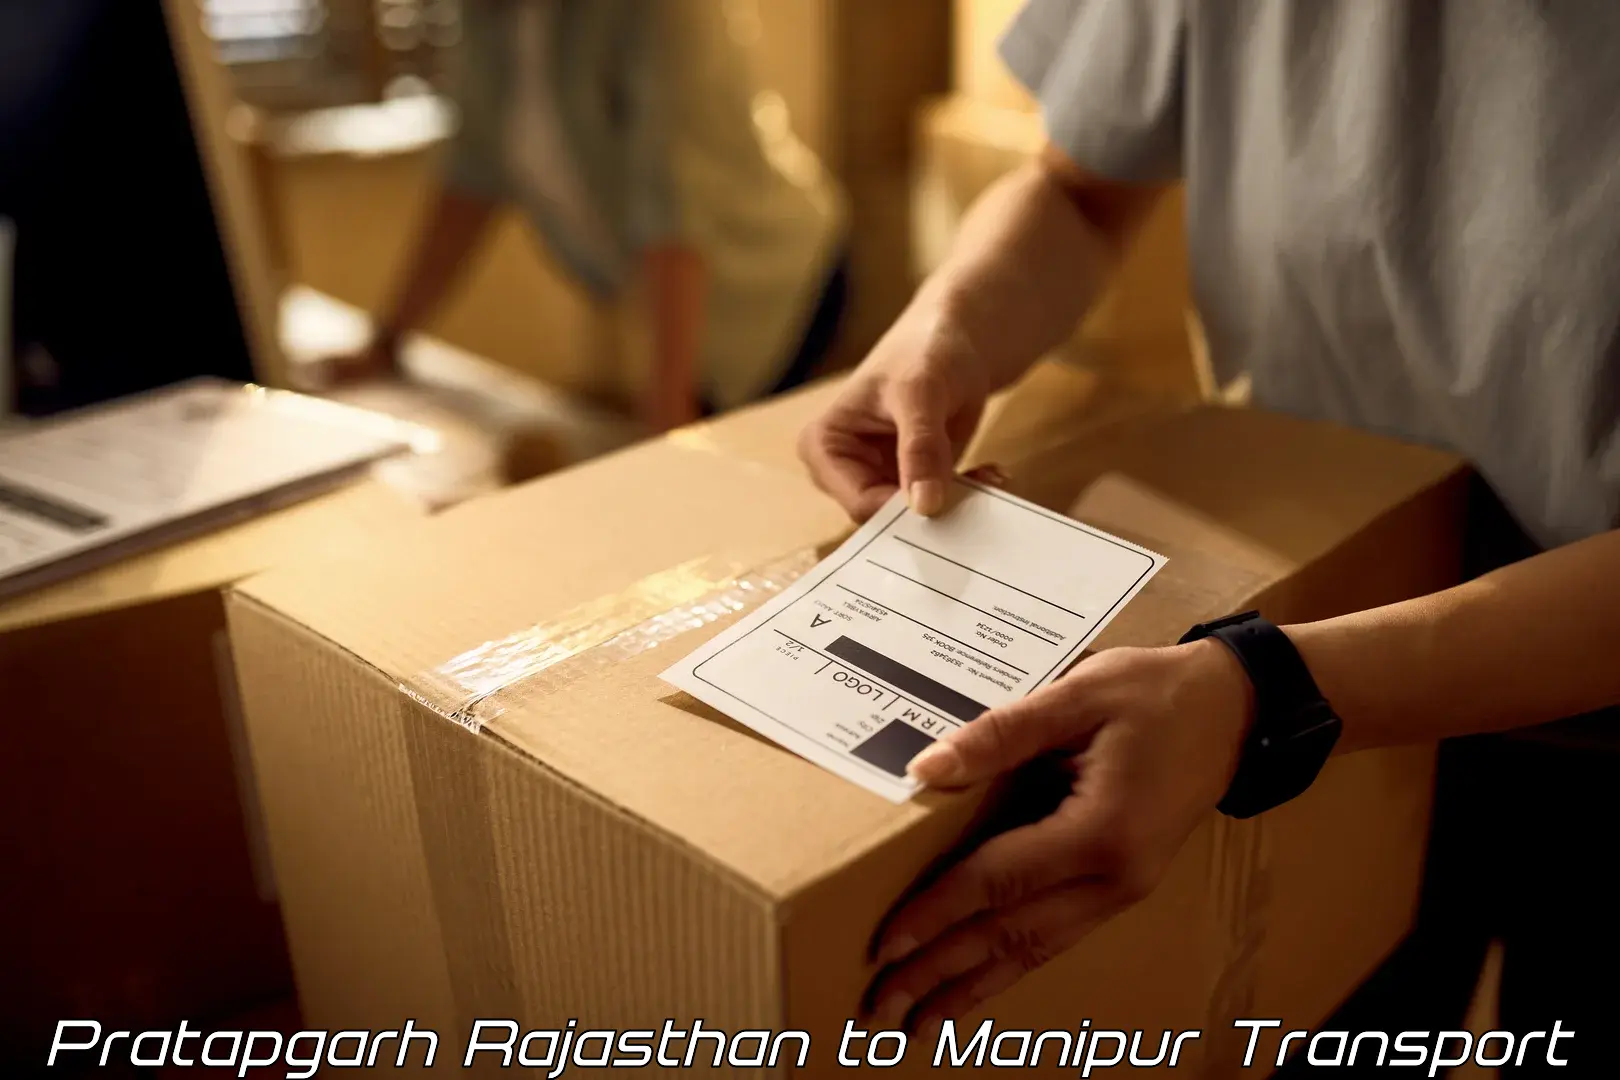 Furniture transport service in Pratapgarh Rajasthan to Ukhrul